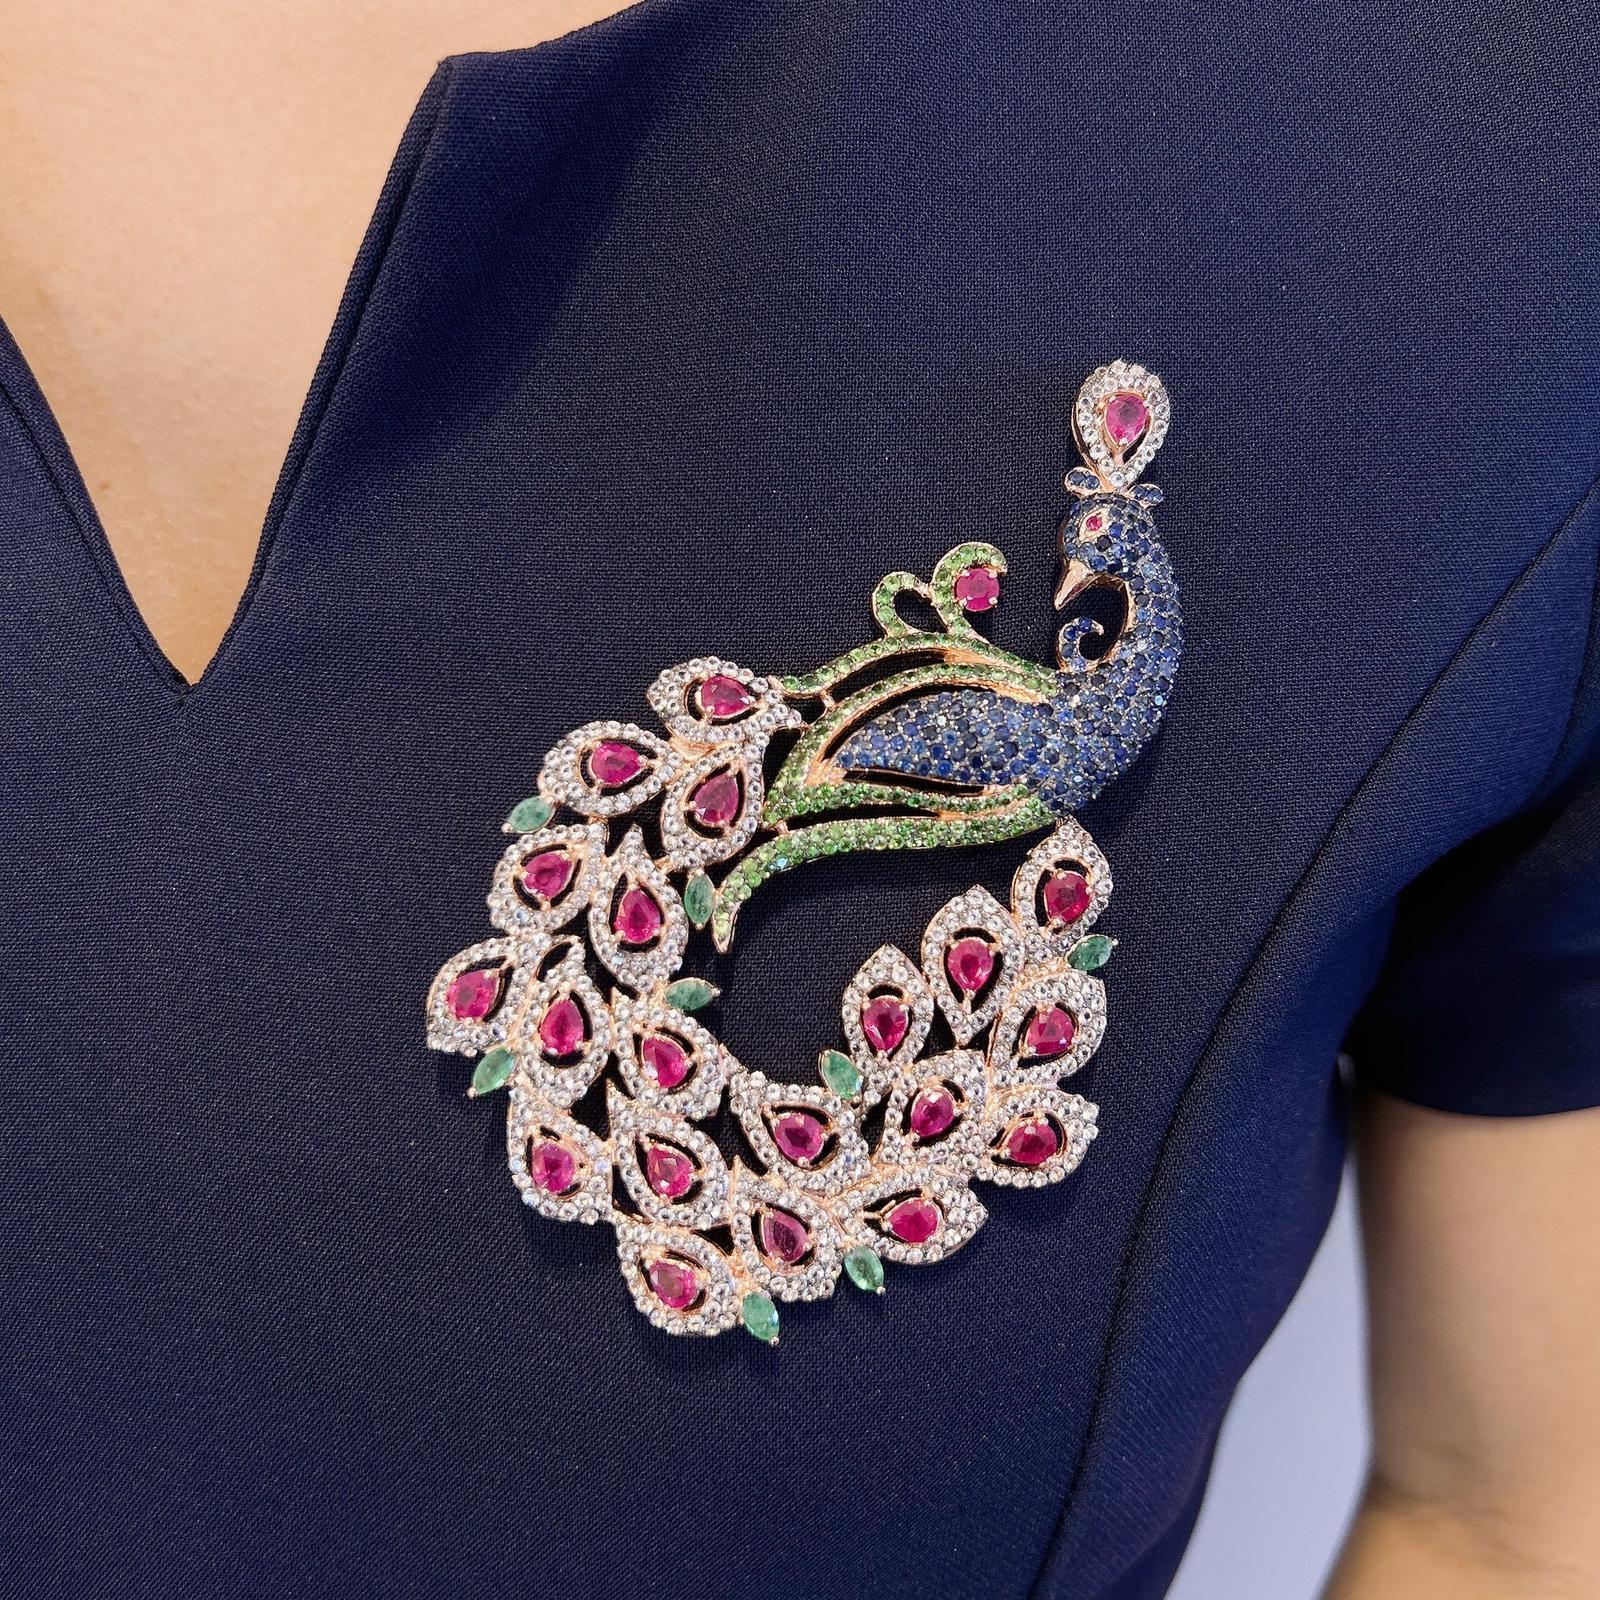 Women's Bochic “Orient Swan” Blue Sapphire, Emerald, Ruby Brooch in 22k Gold & Silver